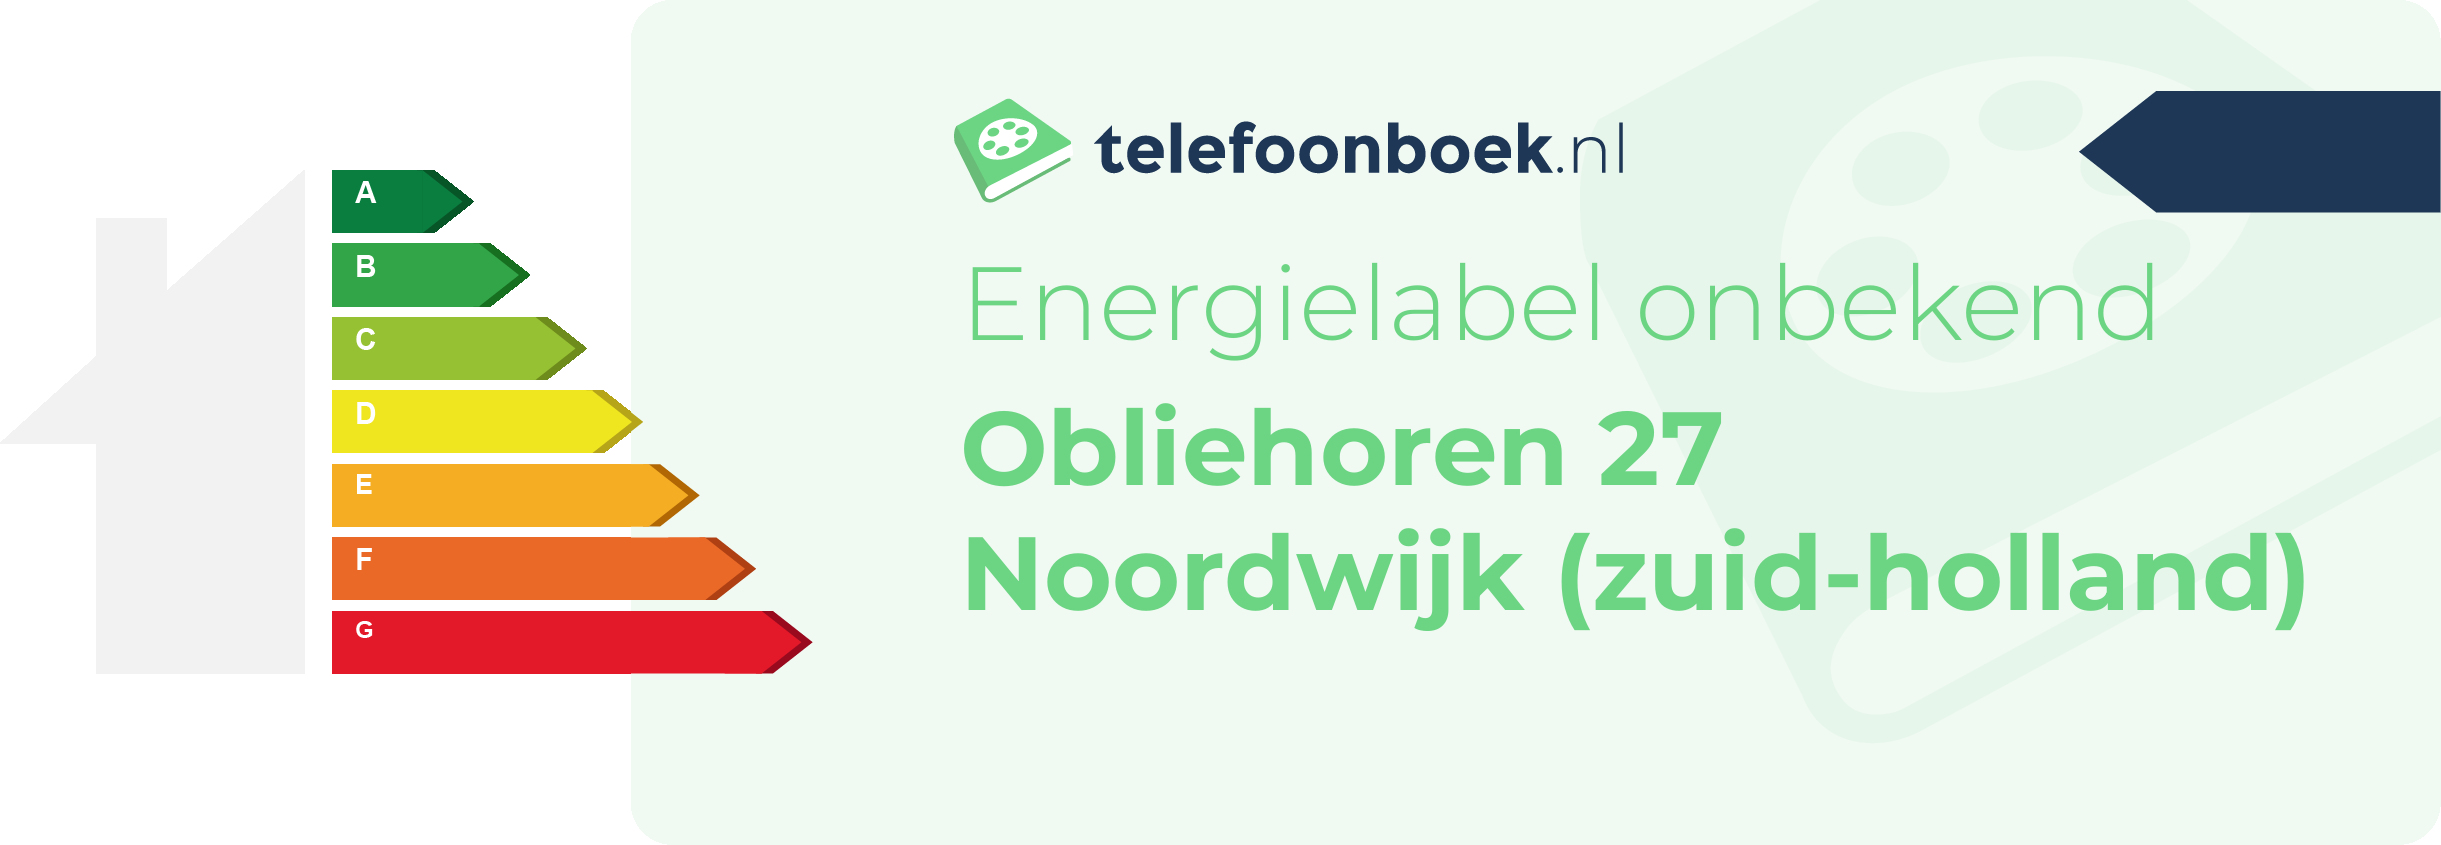 Energielabel Obliehoren 27 Noordwijk (Zuid-Holland)